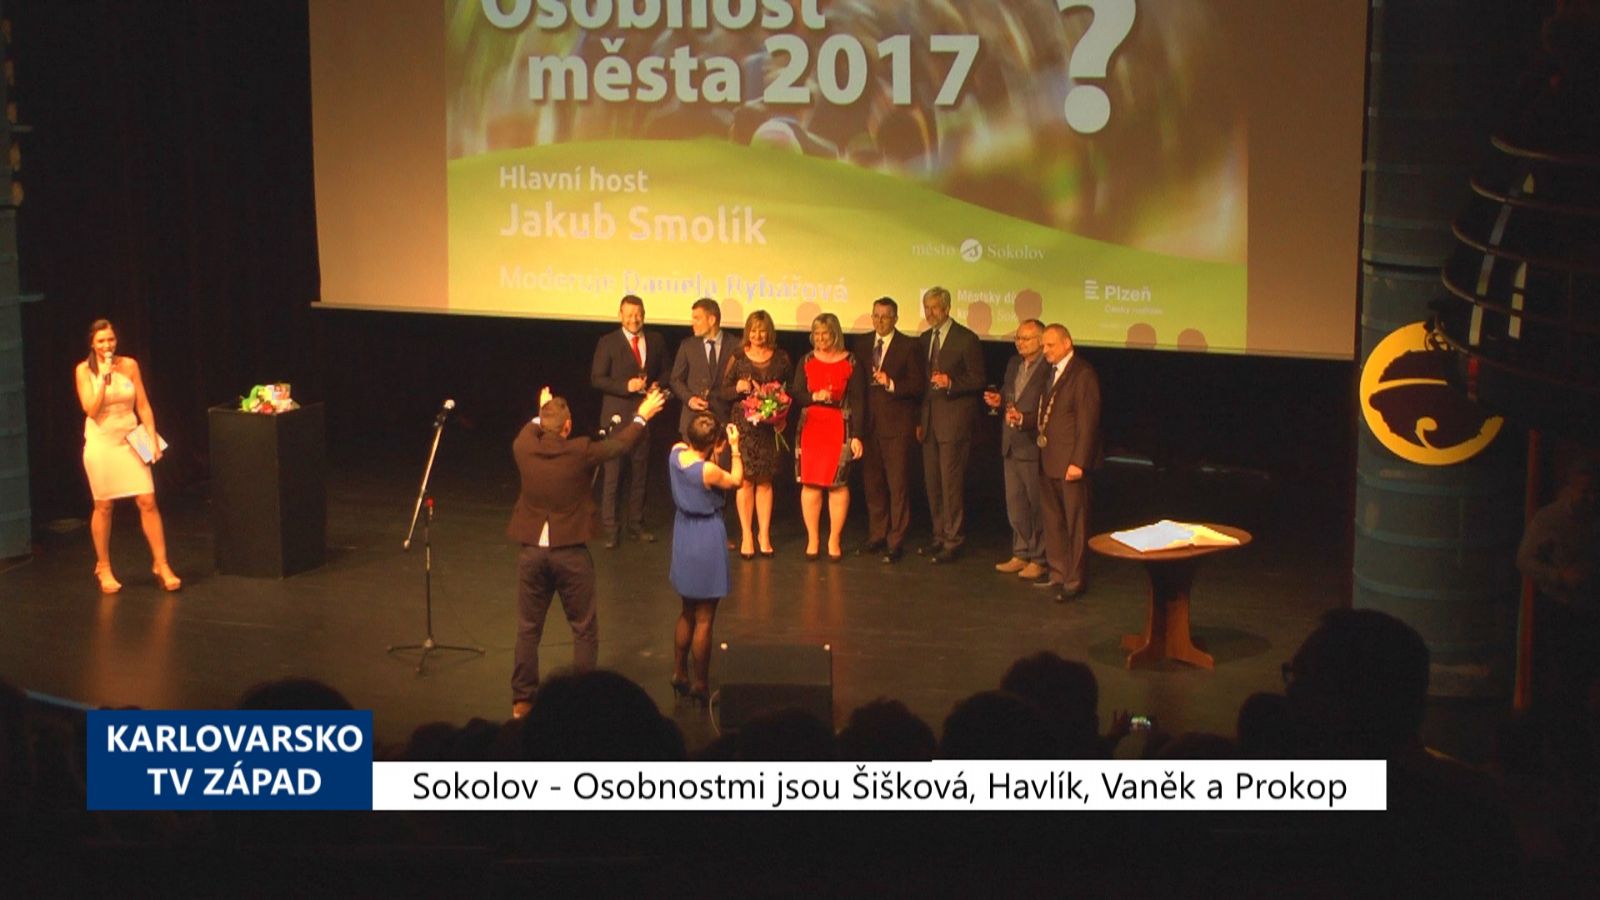 Sokolov: Osobnostmi města jsou Šišková, Vaněk, Havlík a Prokop (TV Západ)